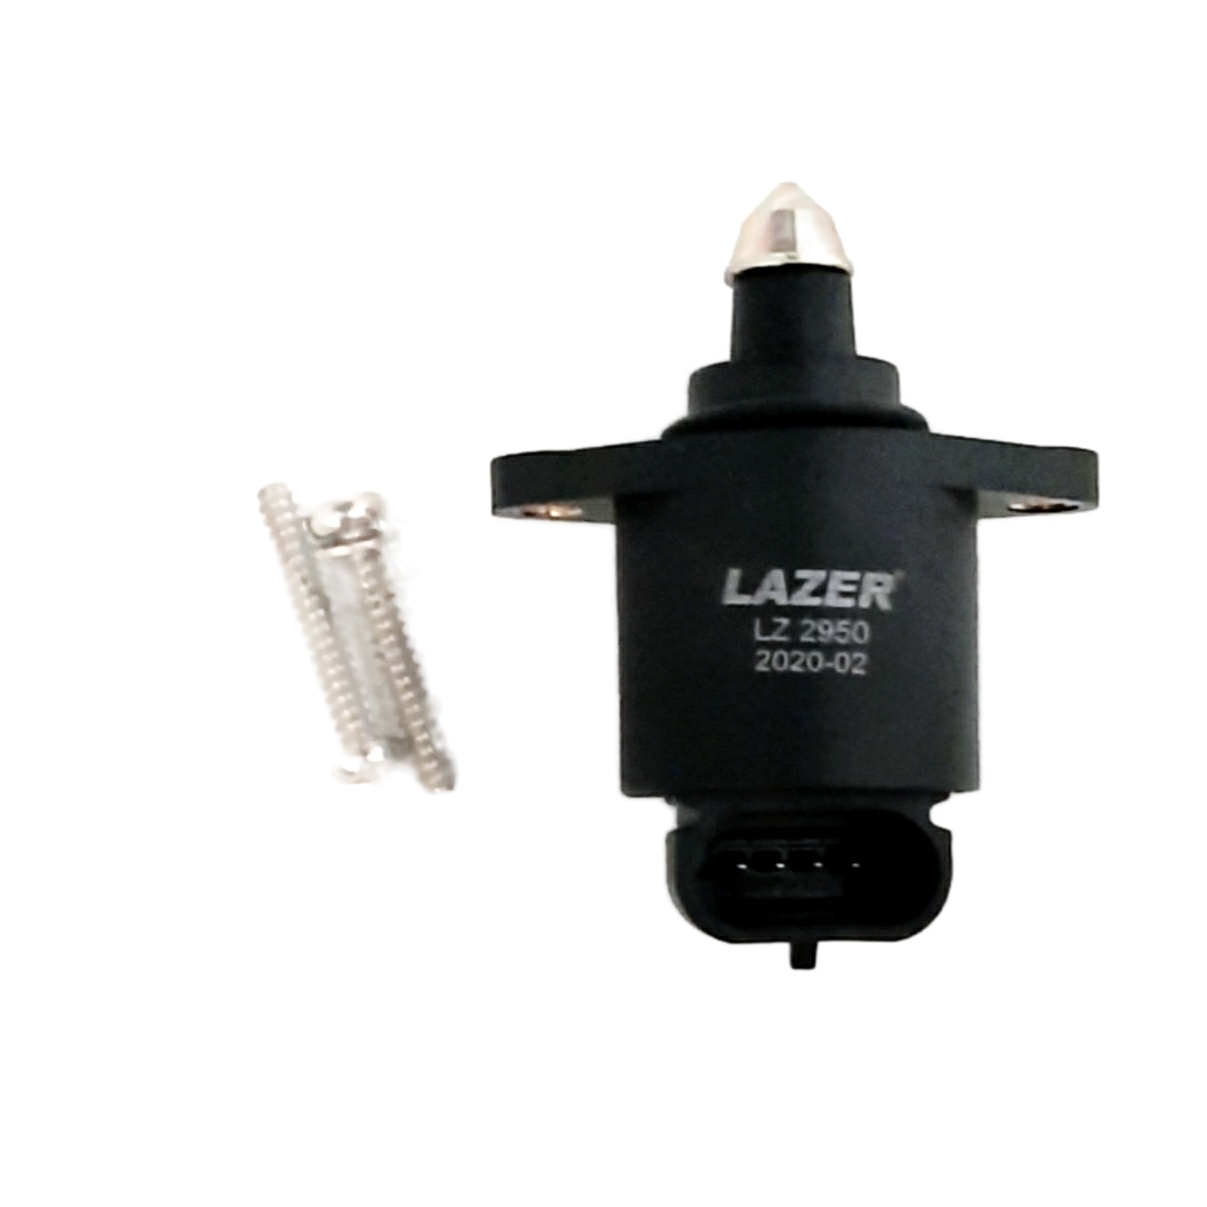 استپر موتور لیزر مدل LZ 2950  مناسب پراید